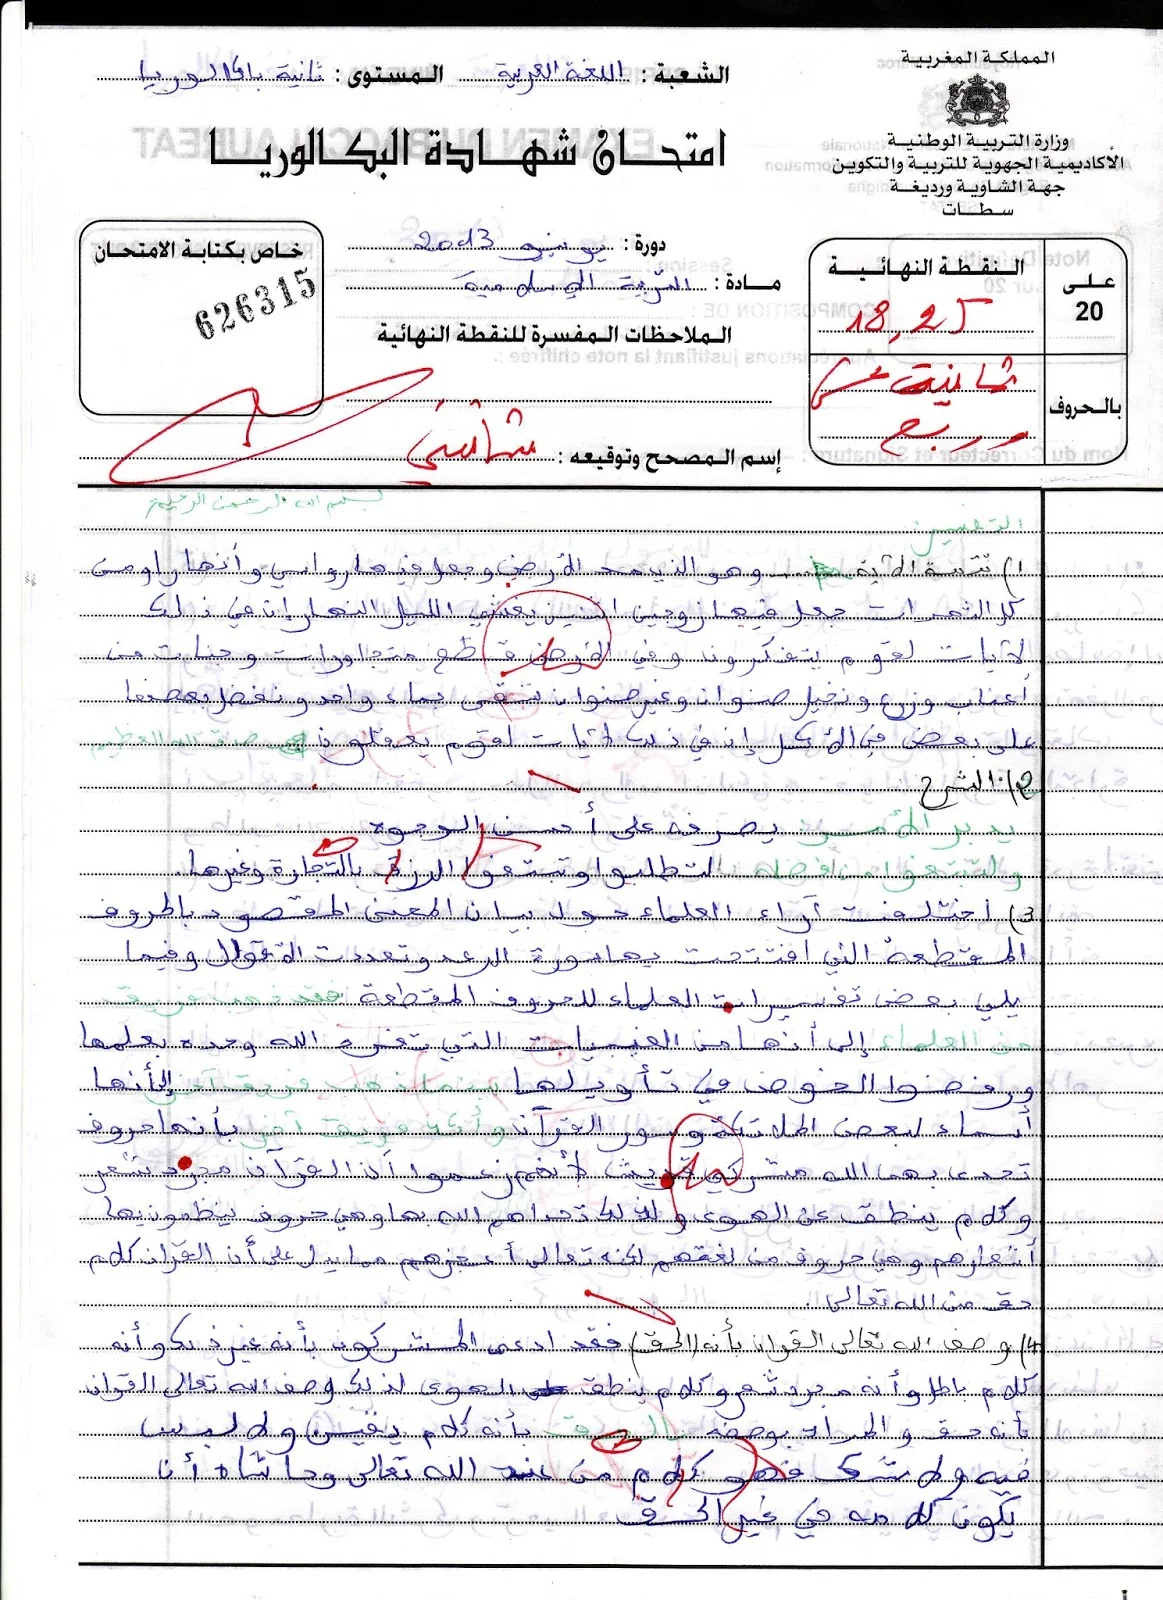 الإنجاز النموذجي (18.25/20)؛ الامتحان الوطني الموحد للباكالوريا، التفسير والحديث، مسلك اللغة العربية 2013 